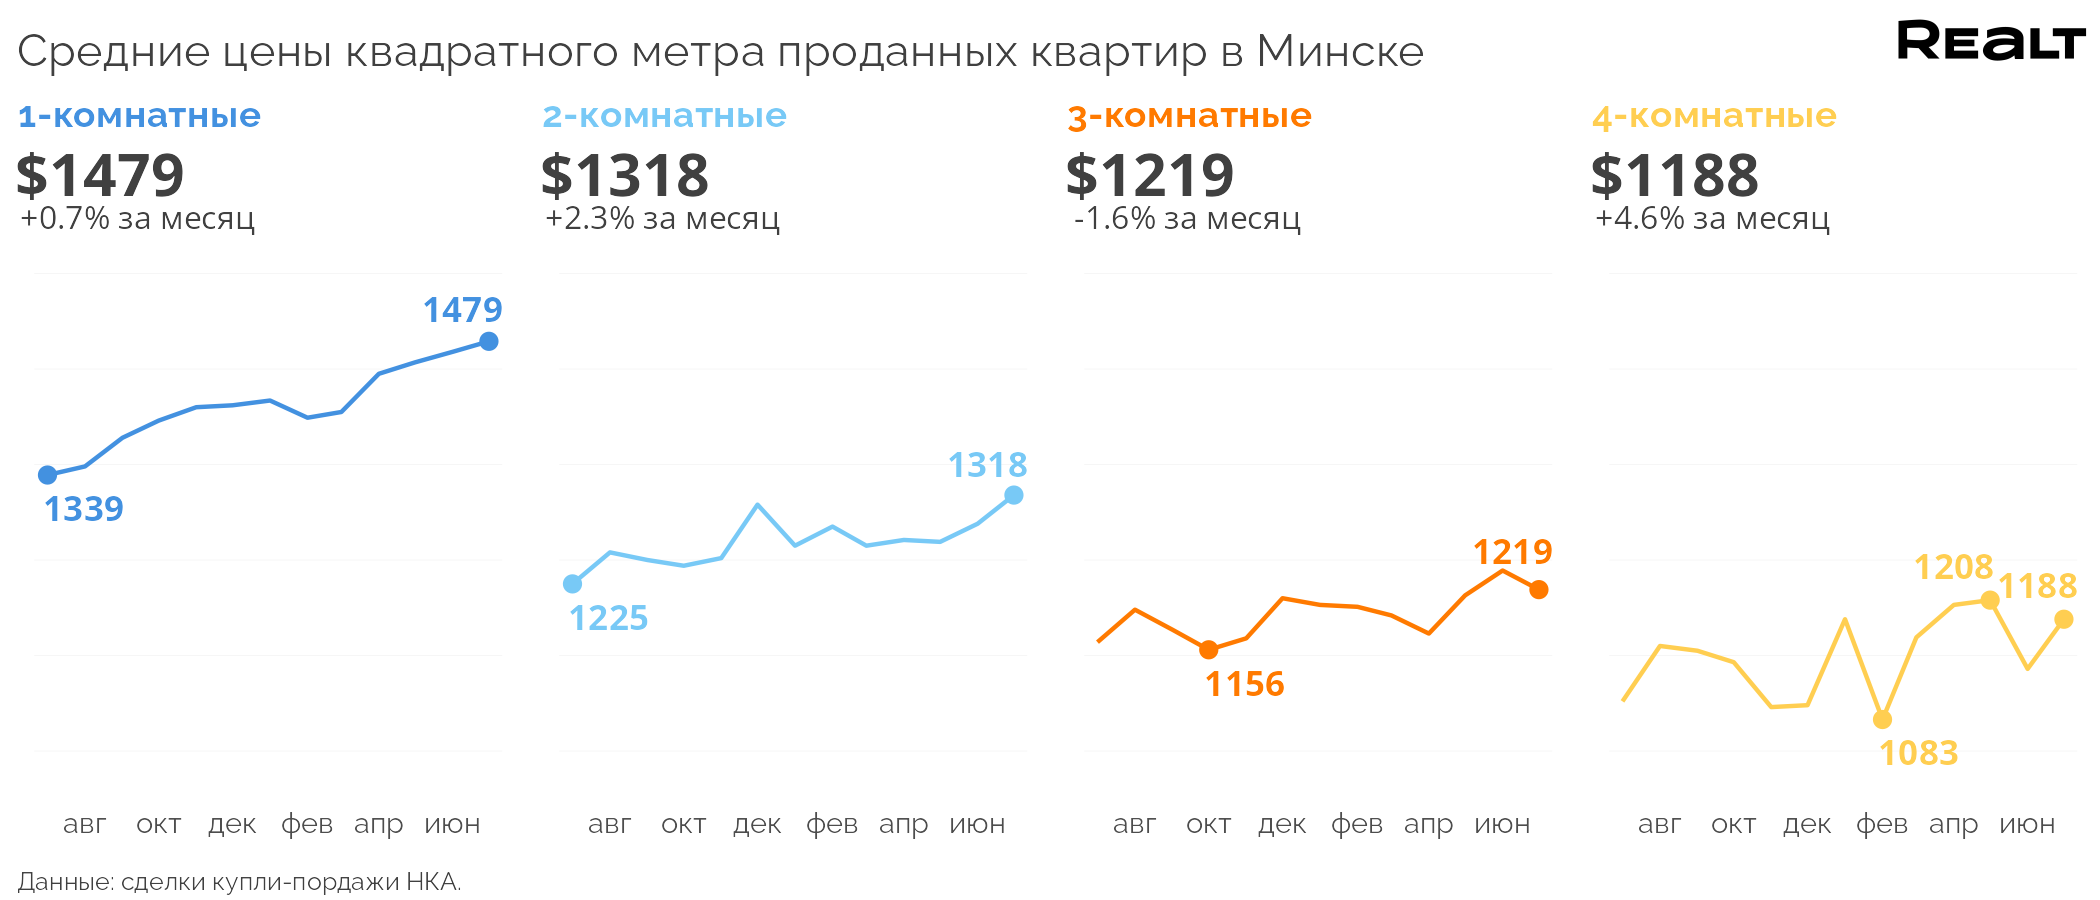 Опять рекорд! Что творится с продажей квартир в Минске (аналитика Realt на основе реальных сделок)